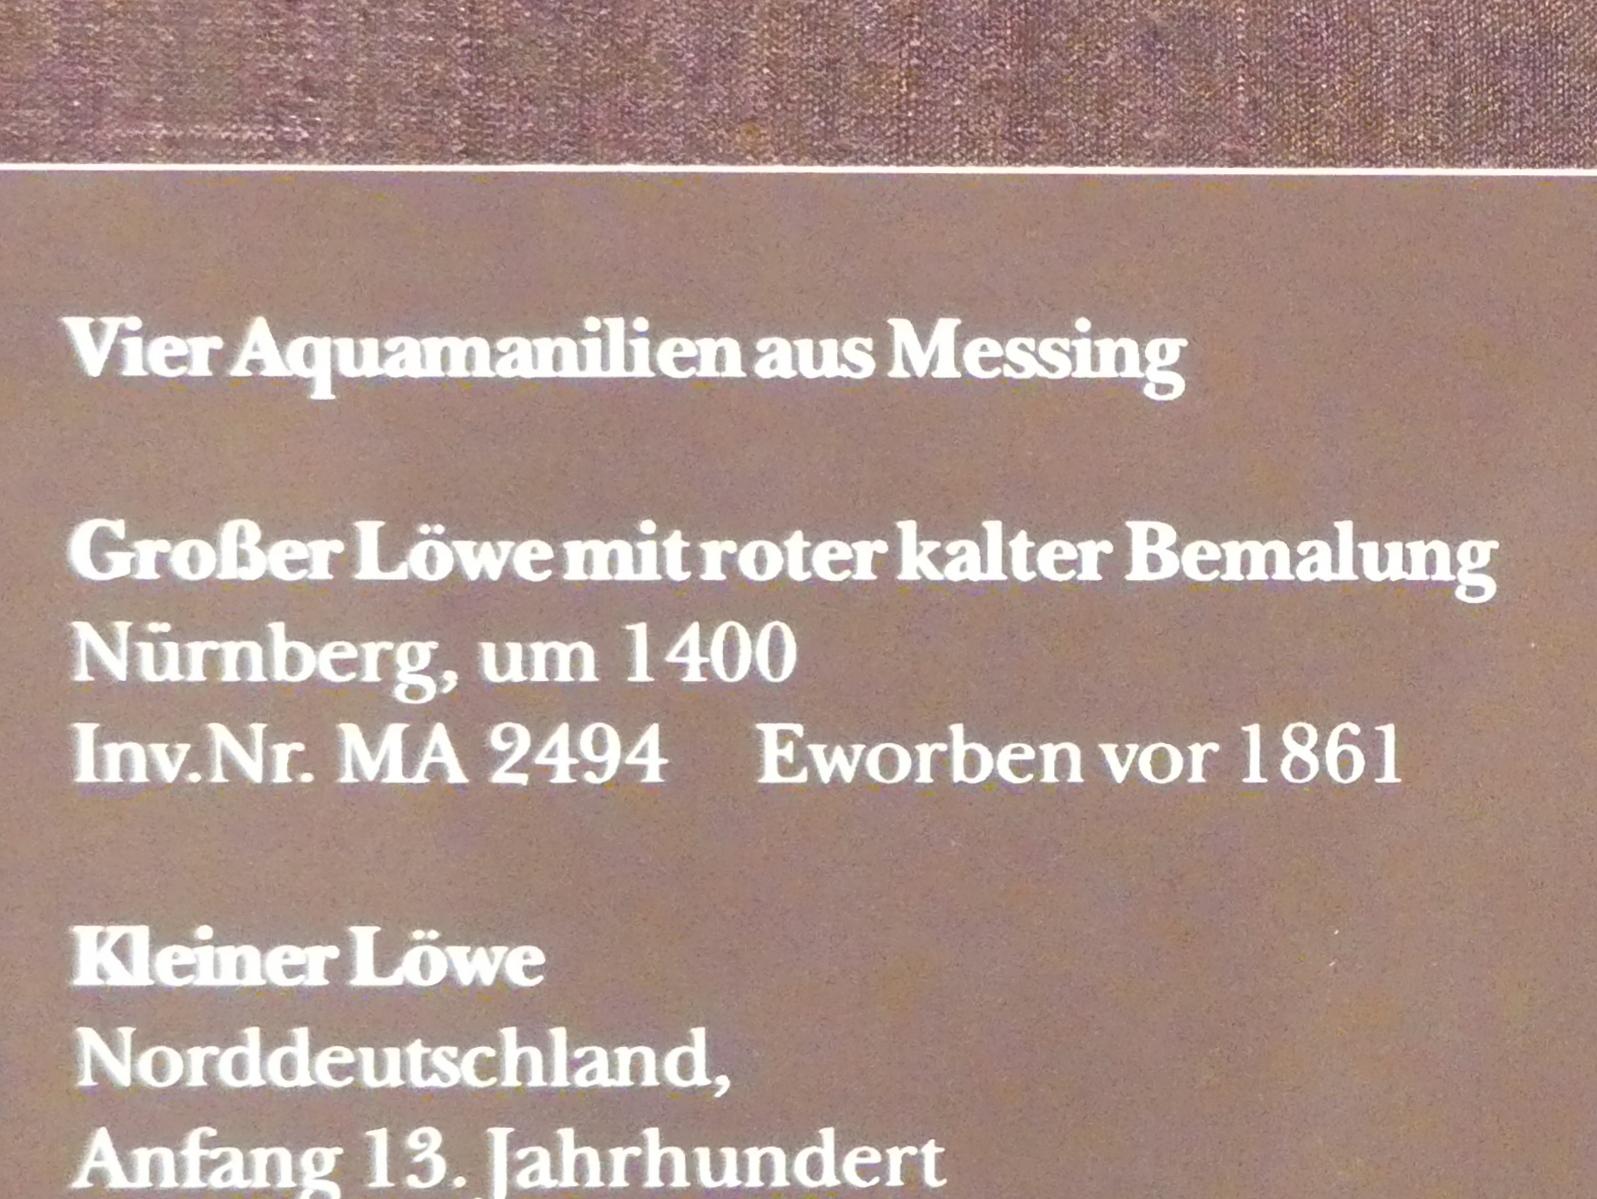 Großer Löwe mit roter kalter Bemalung, München, Bayerisches Nationalmuseum, Saal 1, um 1400, Bild 2/2